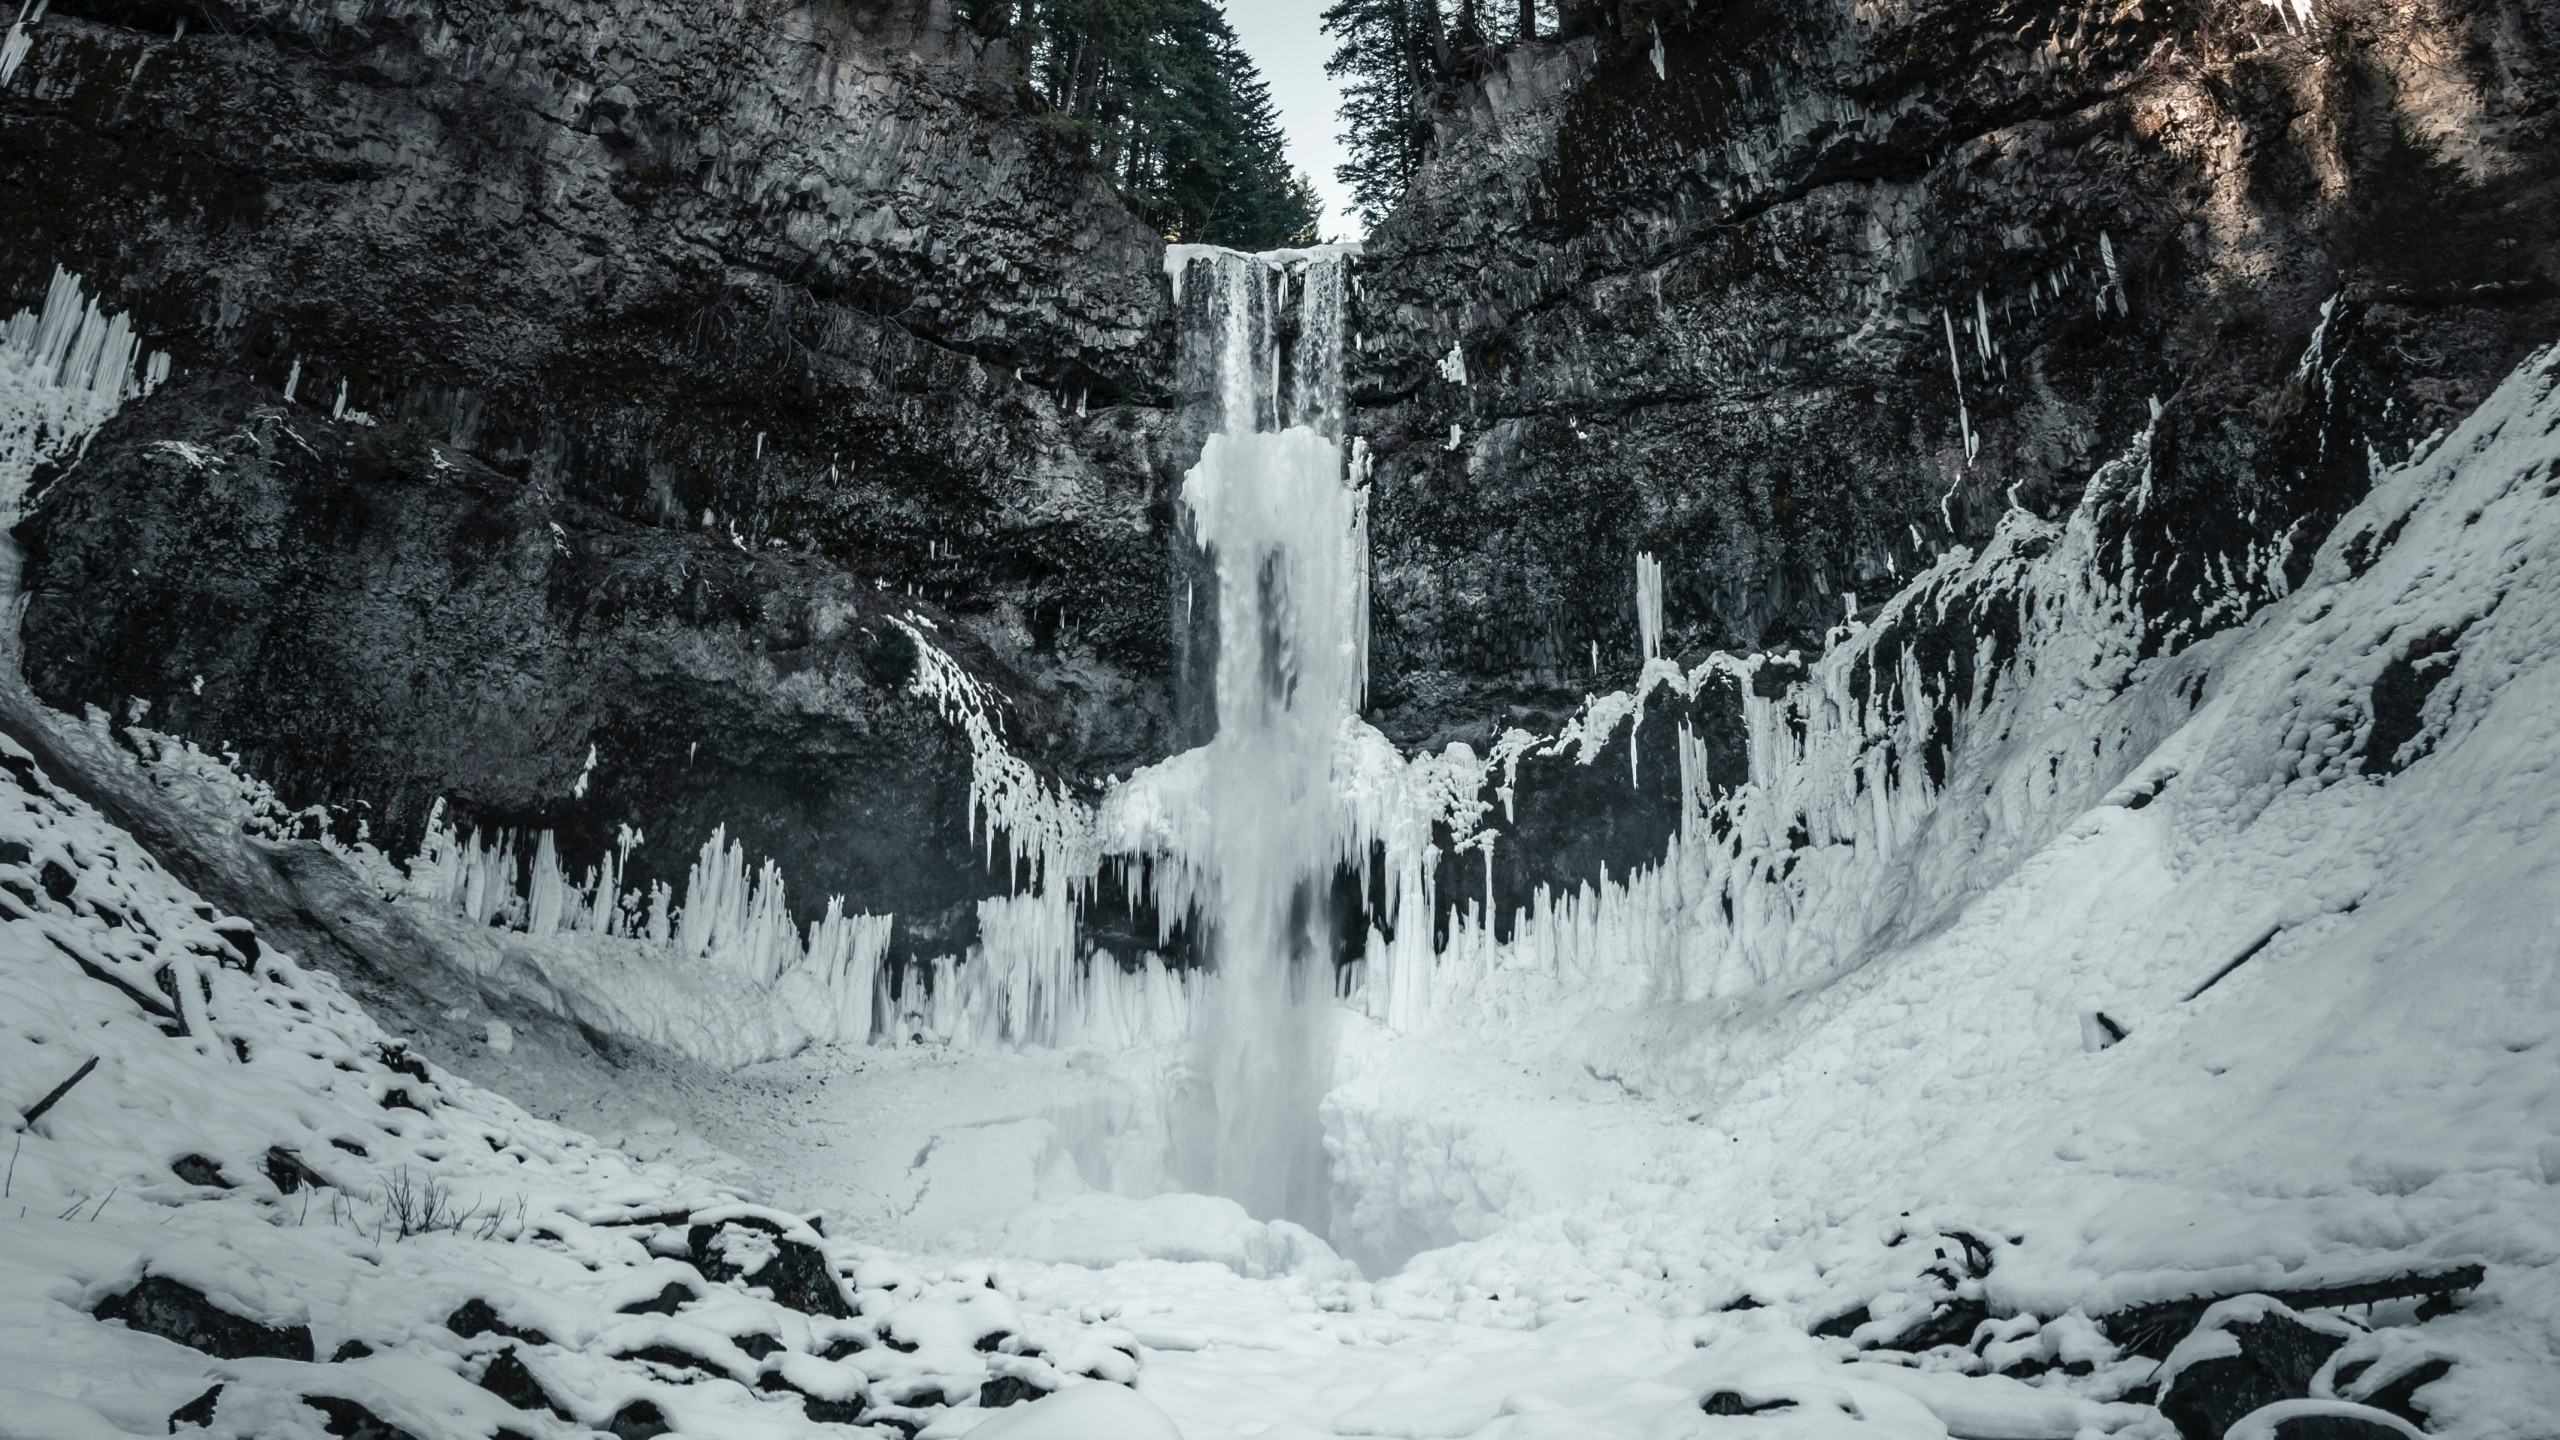 Wasserfall, Natur, Wasser, Winter, Schnee. Wallpaper in 2560x1440 Resolution